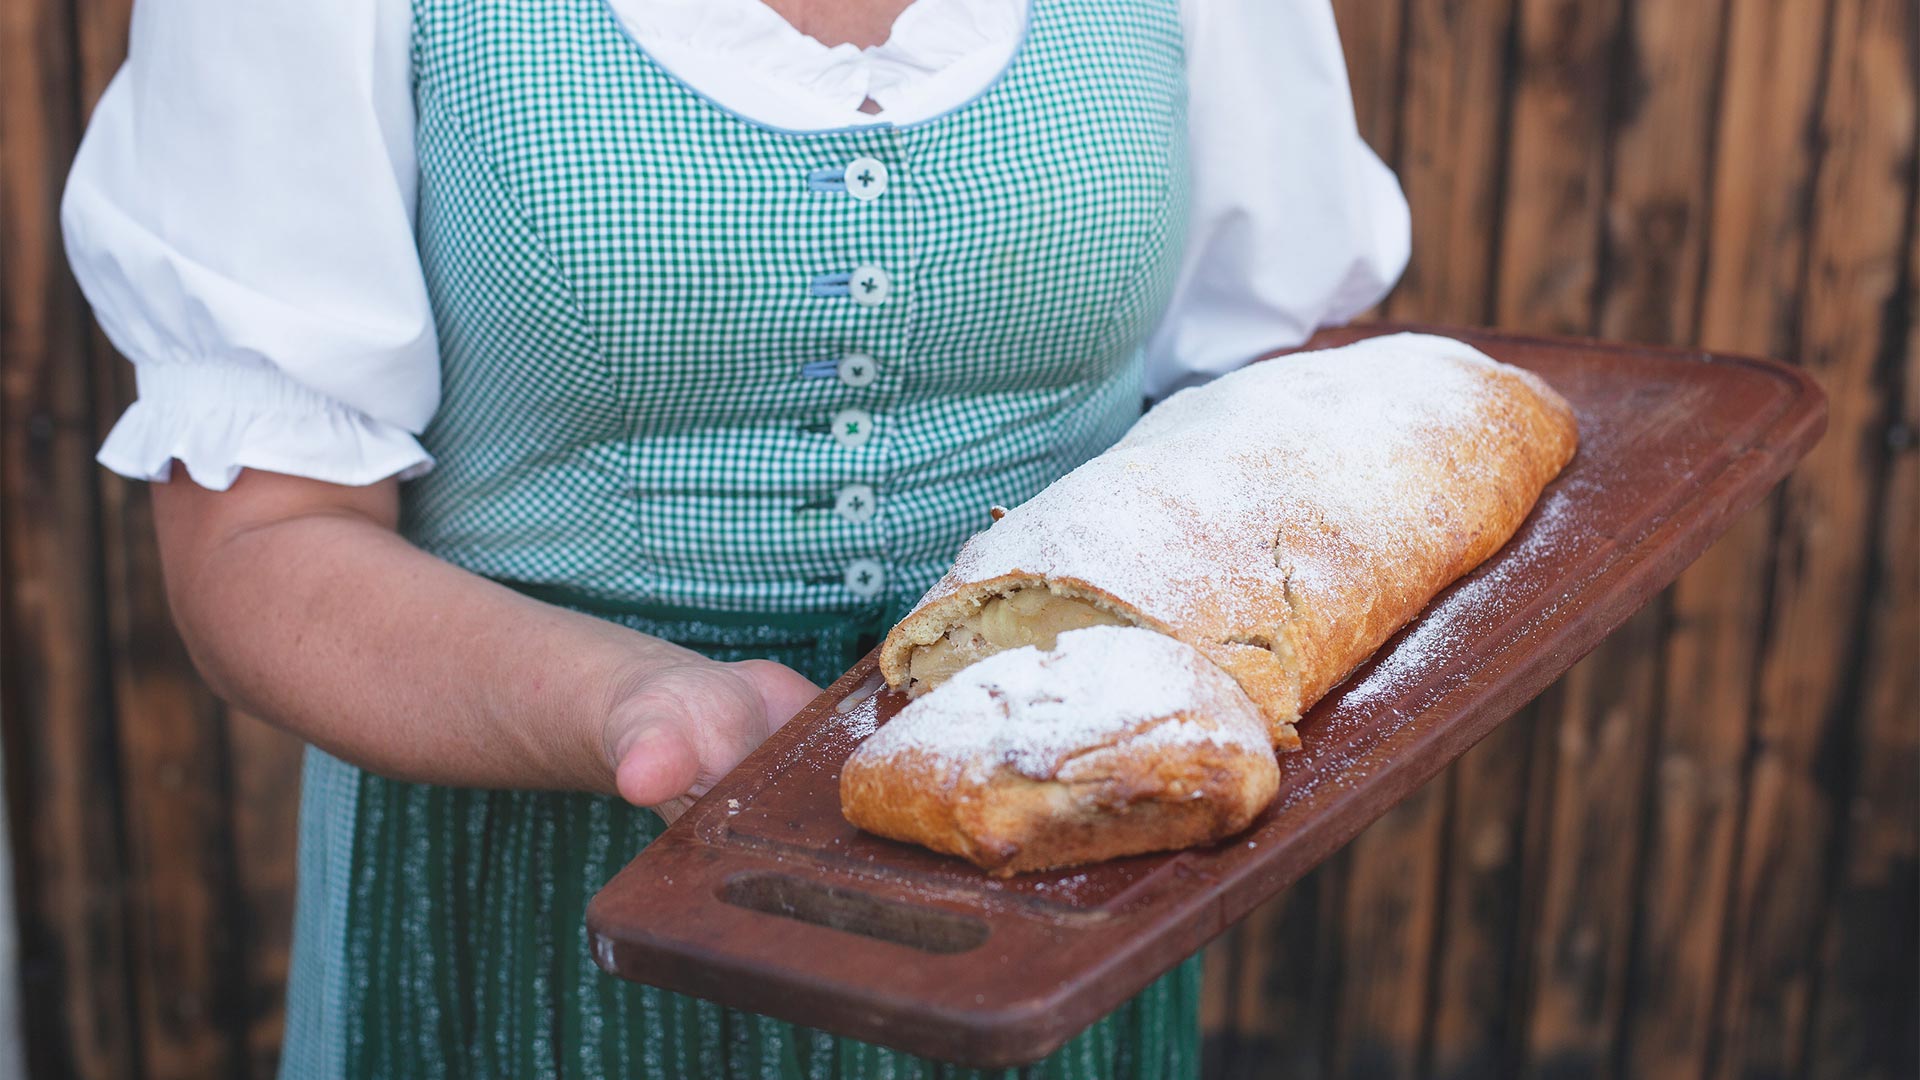 Tagliera con sopra il pane appena sfornato tenuta da una cameriera di un ristorante tipico dell'Alto Adige.